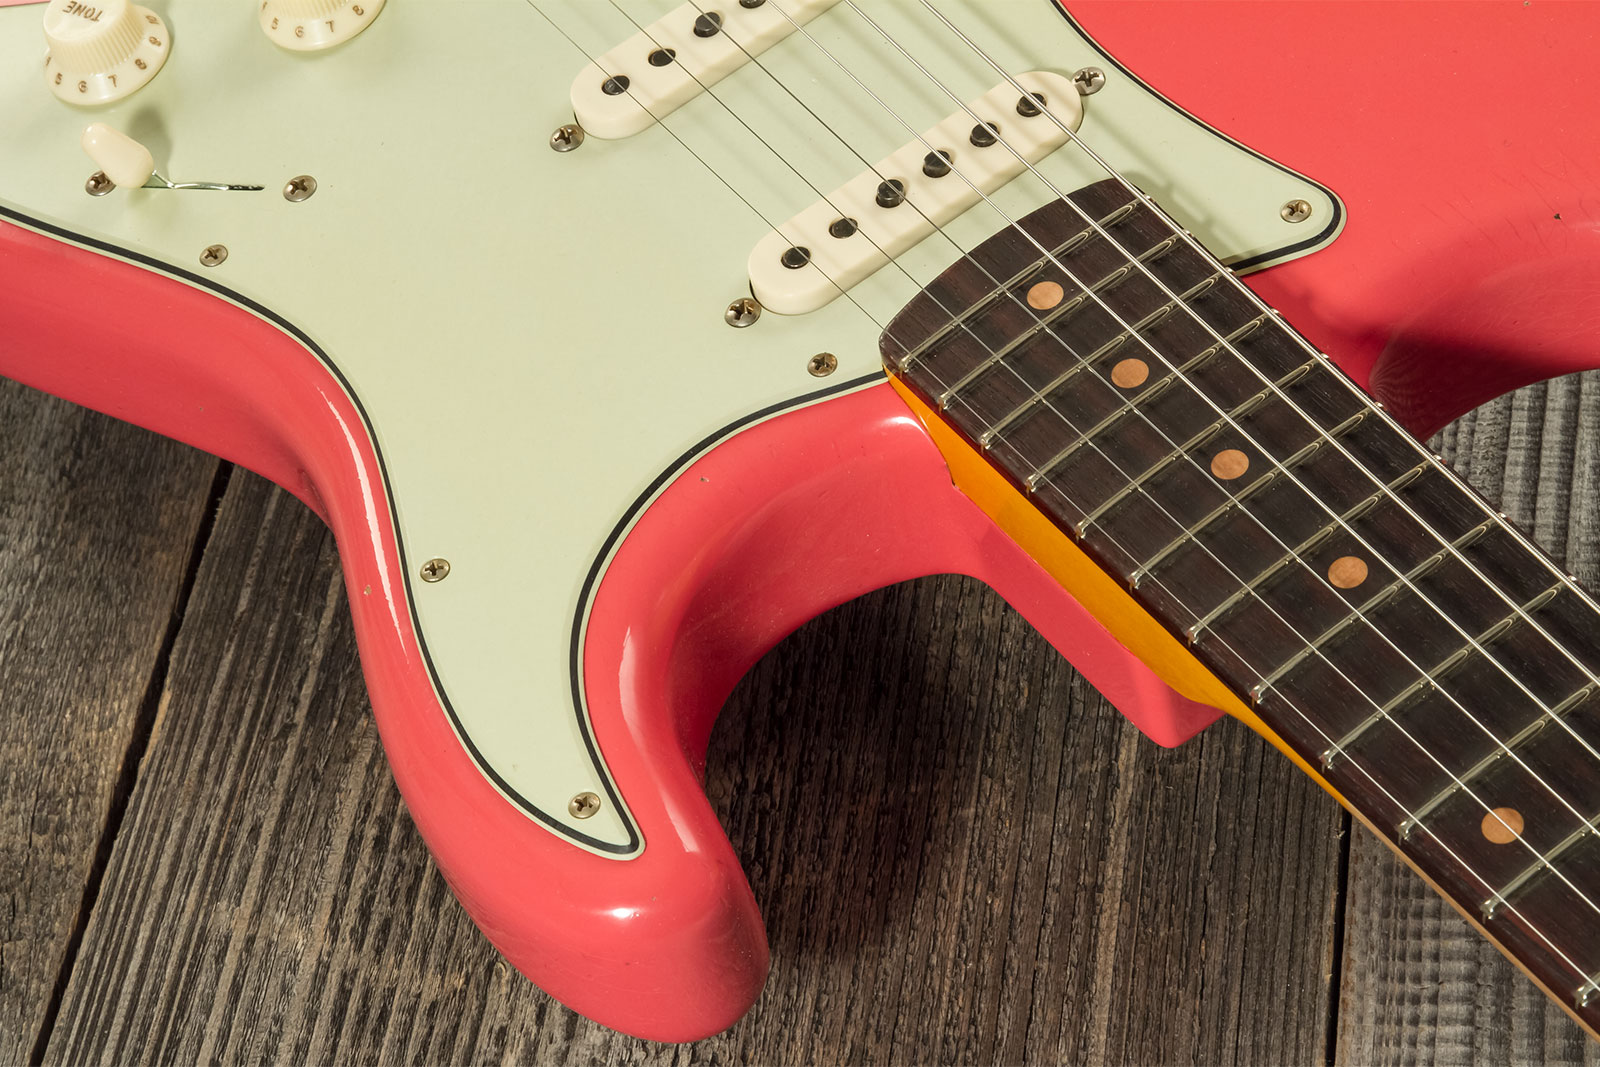 Fender Custom Shop Strat 1959 3s Trem Rw #cz571088 - Journeyman Relic Aged Fiesta Red - Elektrische gitaar in Str-vorm - Variation 3